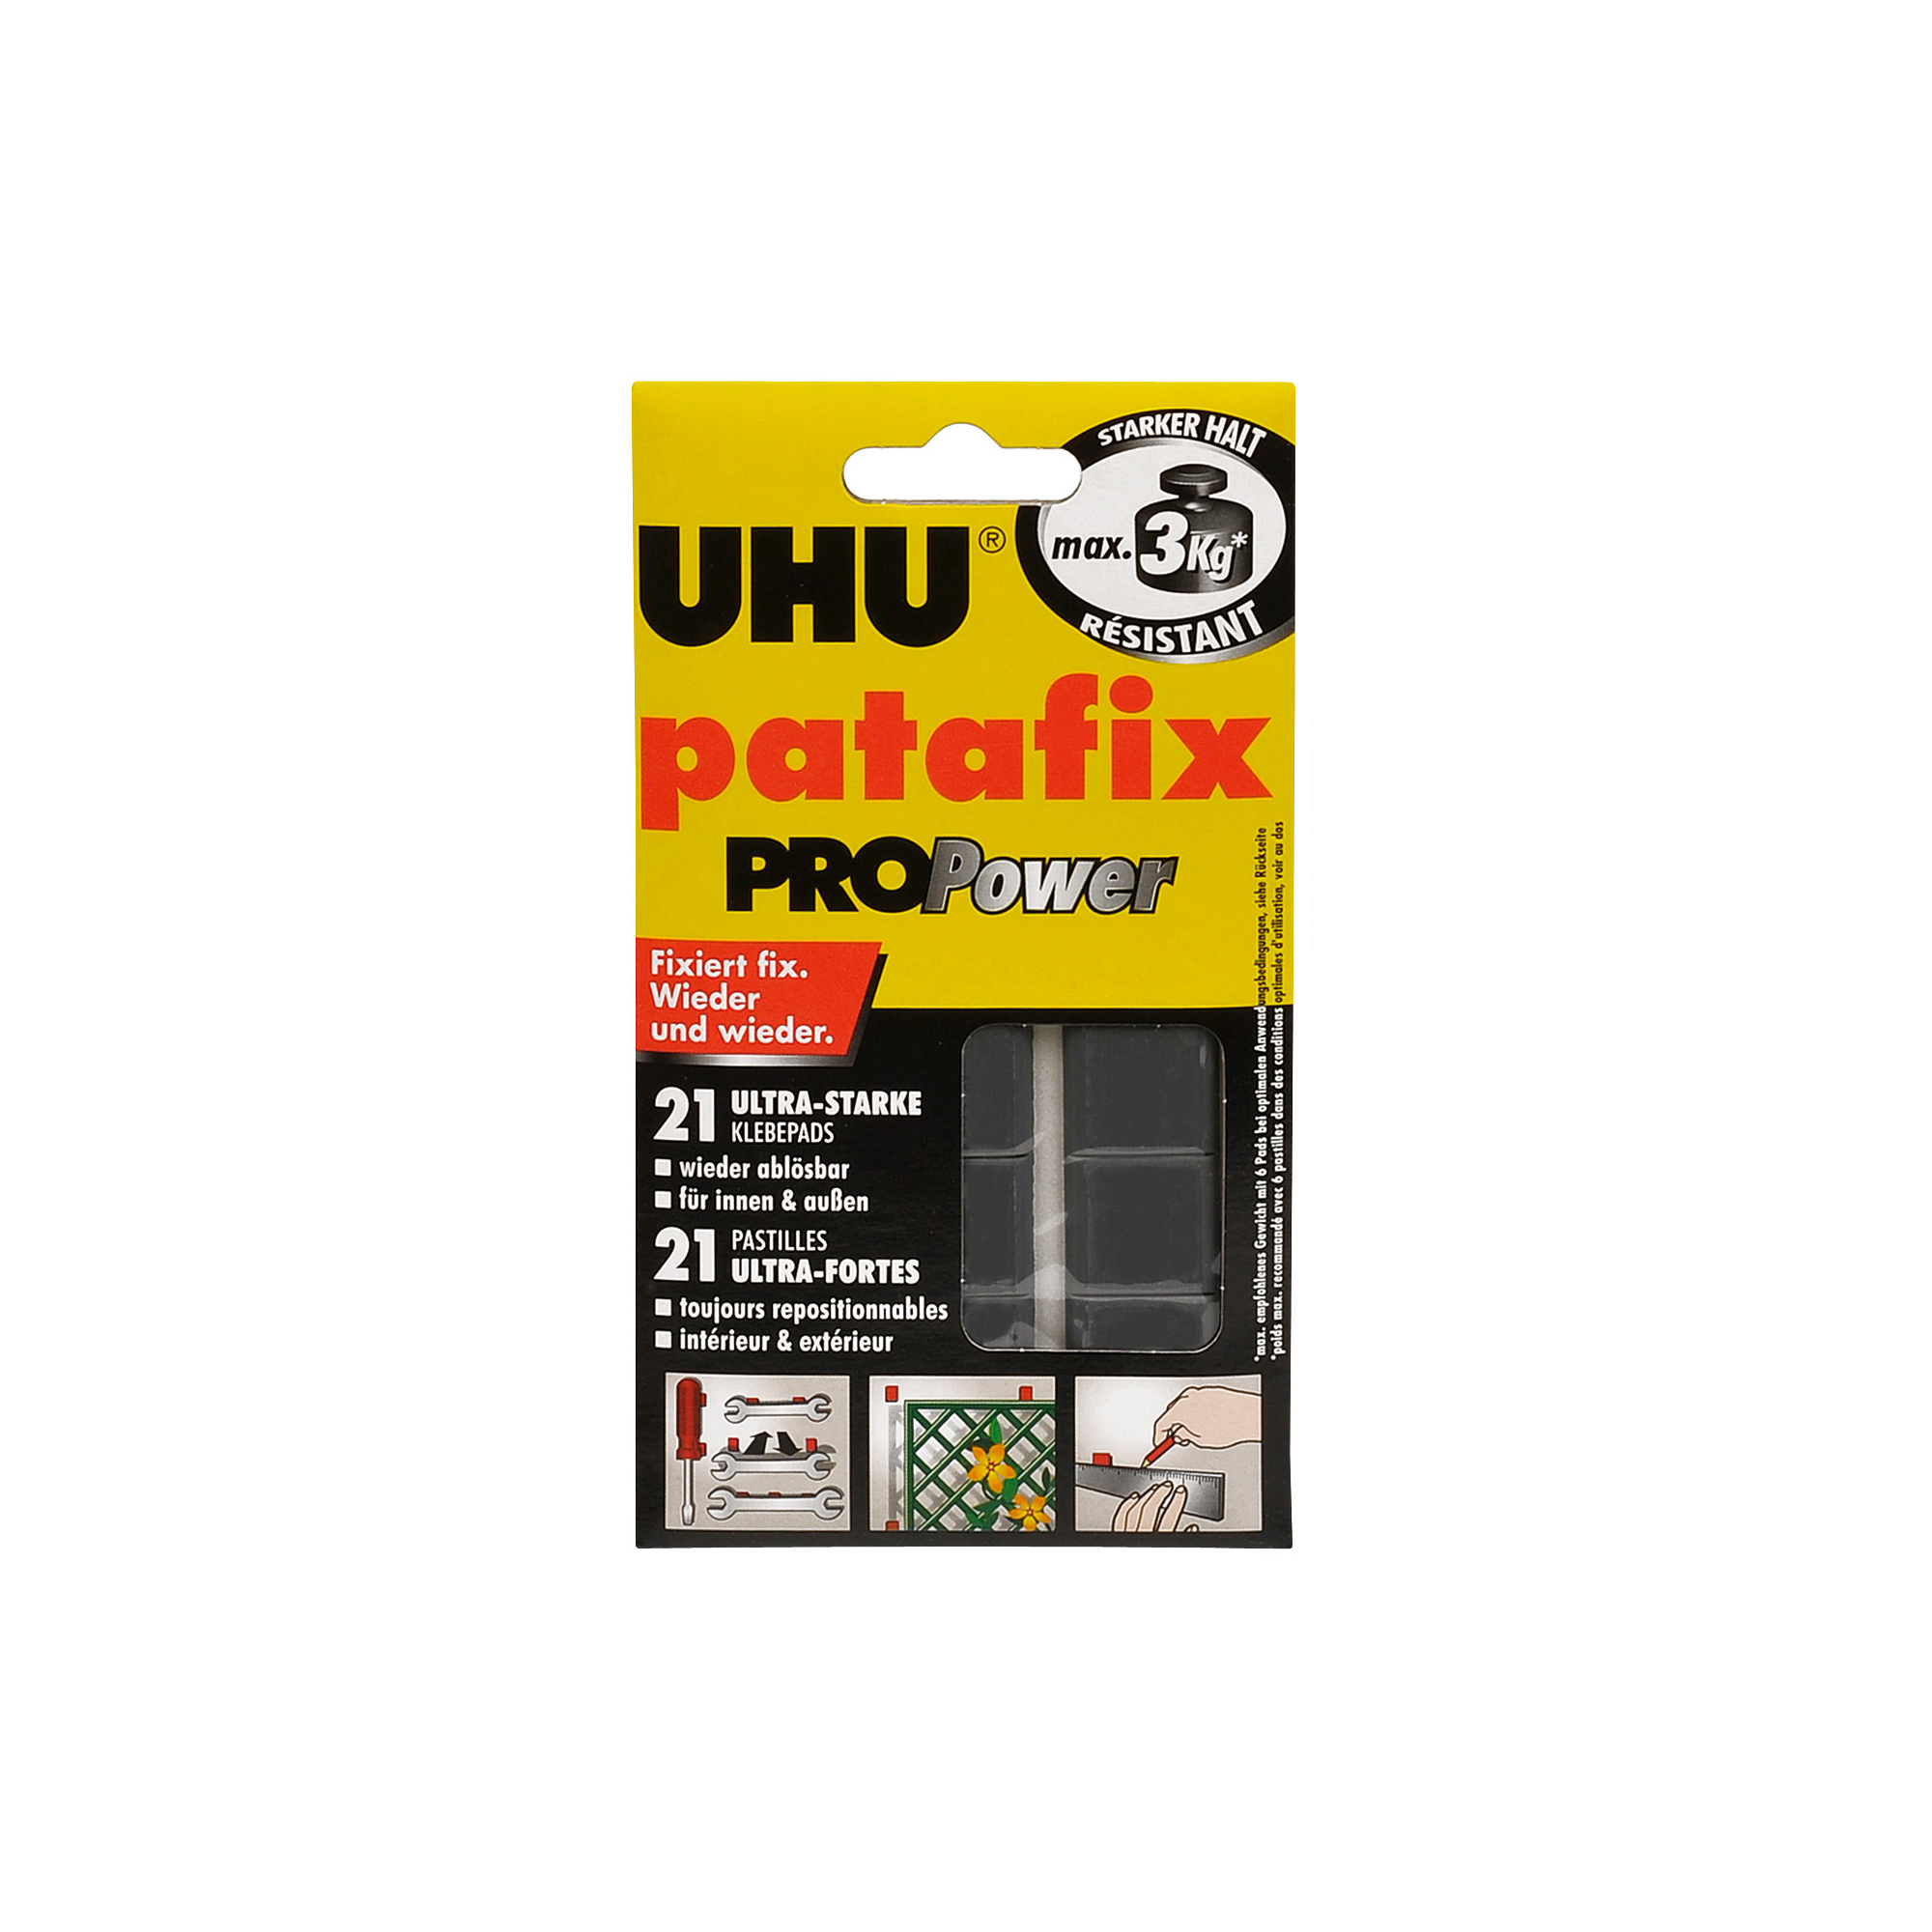 UHU patafix, wieder ablösbare und verwendbare Klebepads, weiß, 80 Stück